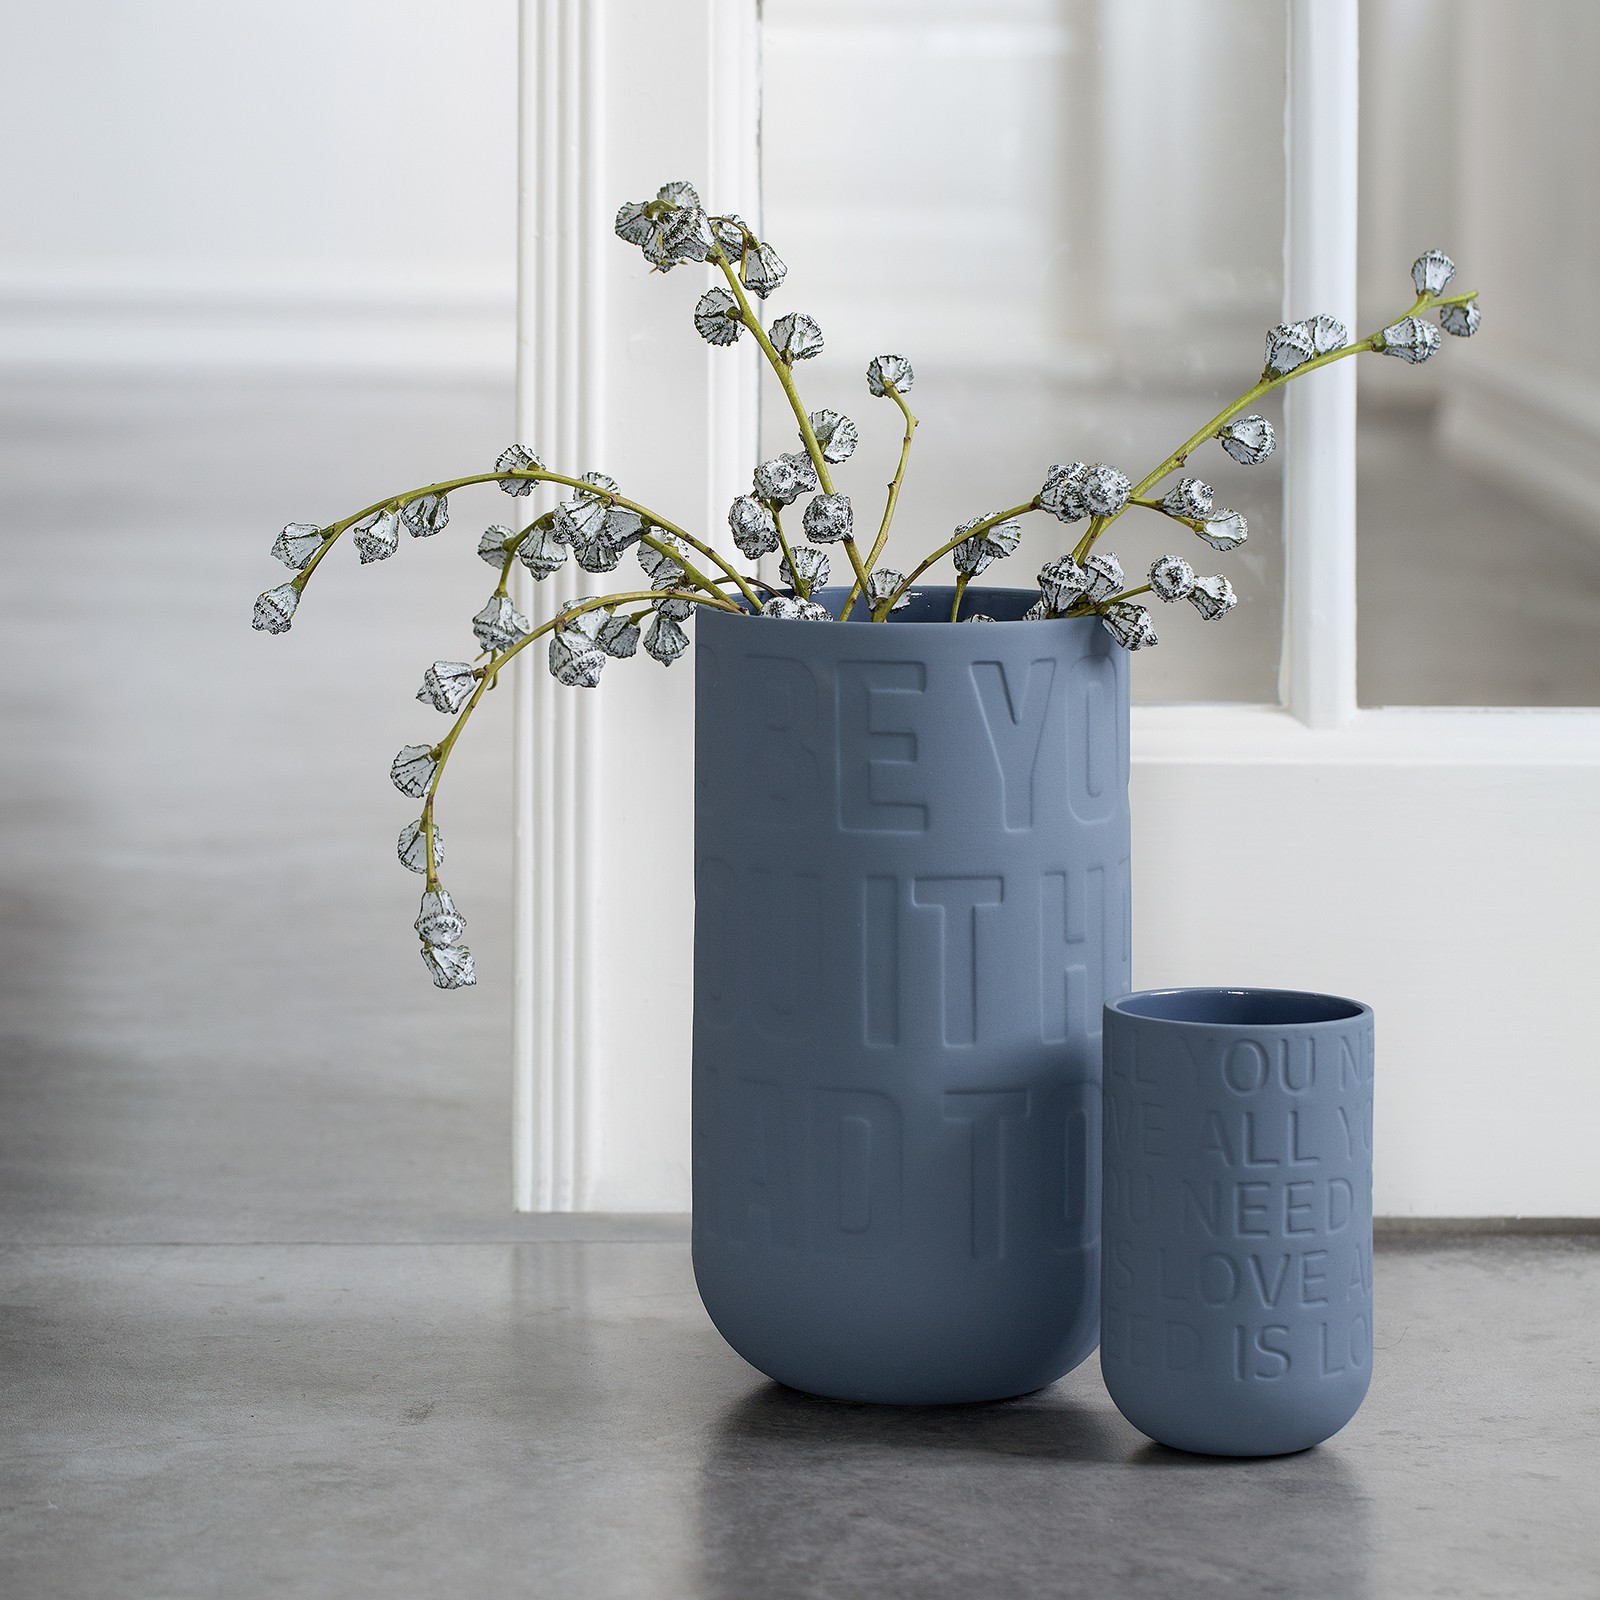 KÄHLER LOVE SONG vase - indigoblå (H220 mm)